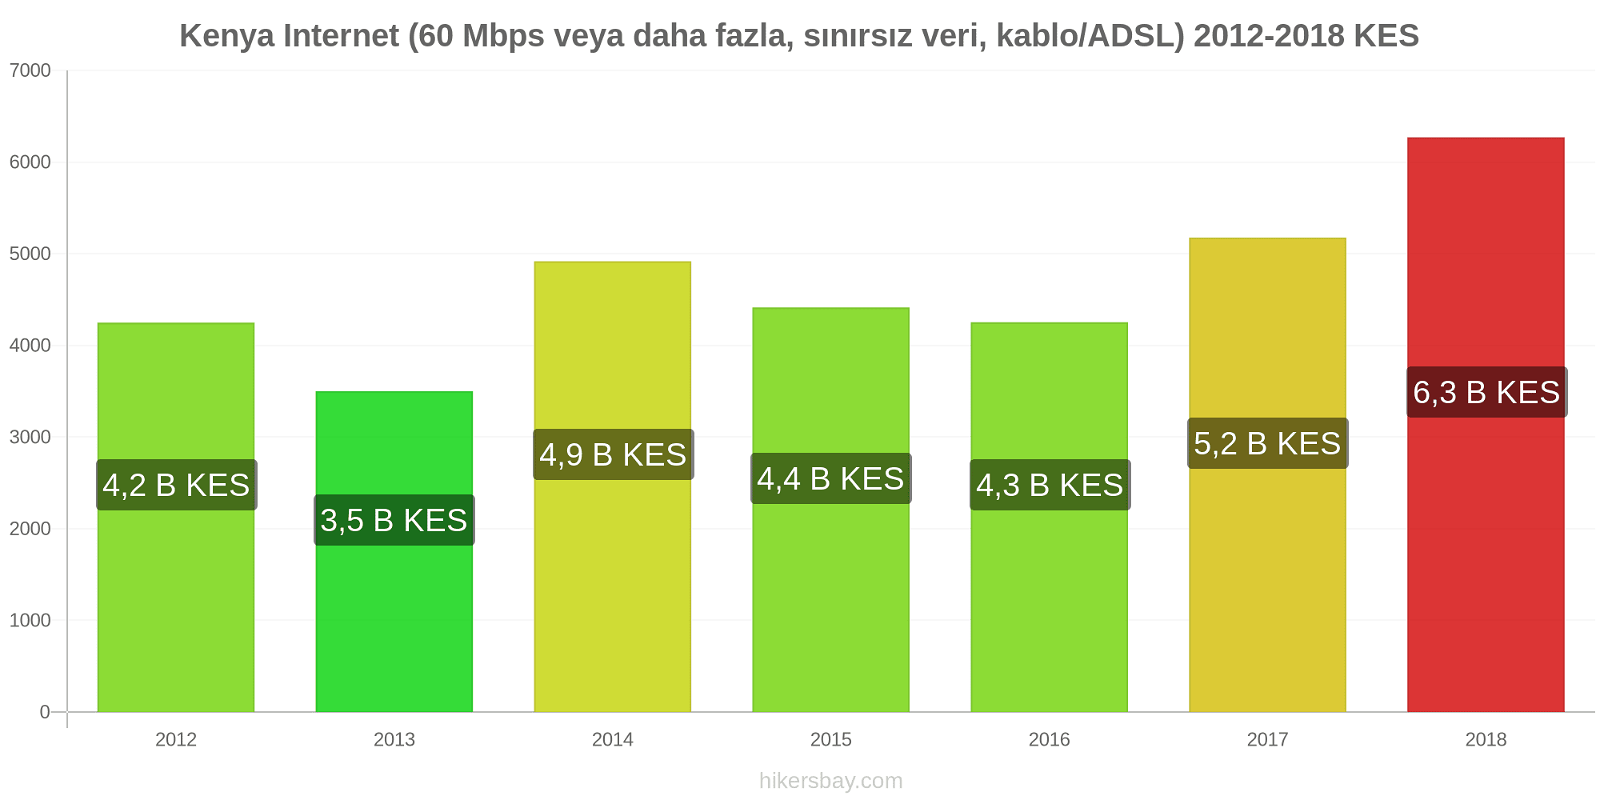 Kenya fiyat değişiklikleri İnternet (60 Mbps veya daha fazla, sınırsız veri, kablo/ADSL) hikersbay.com